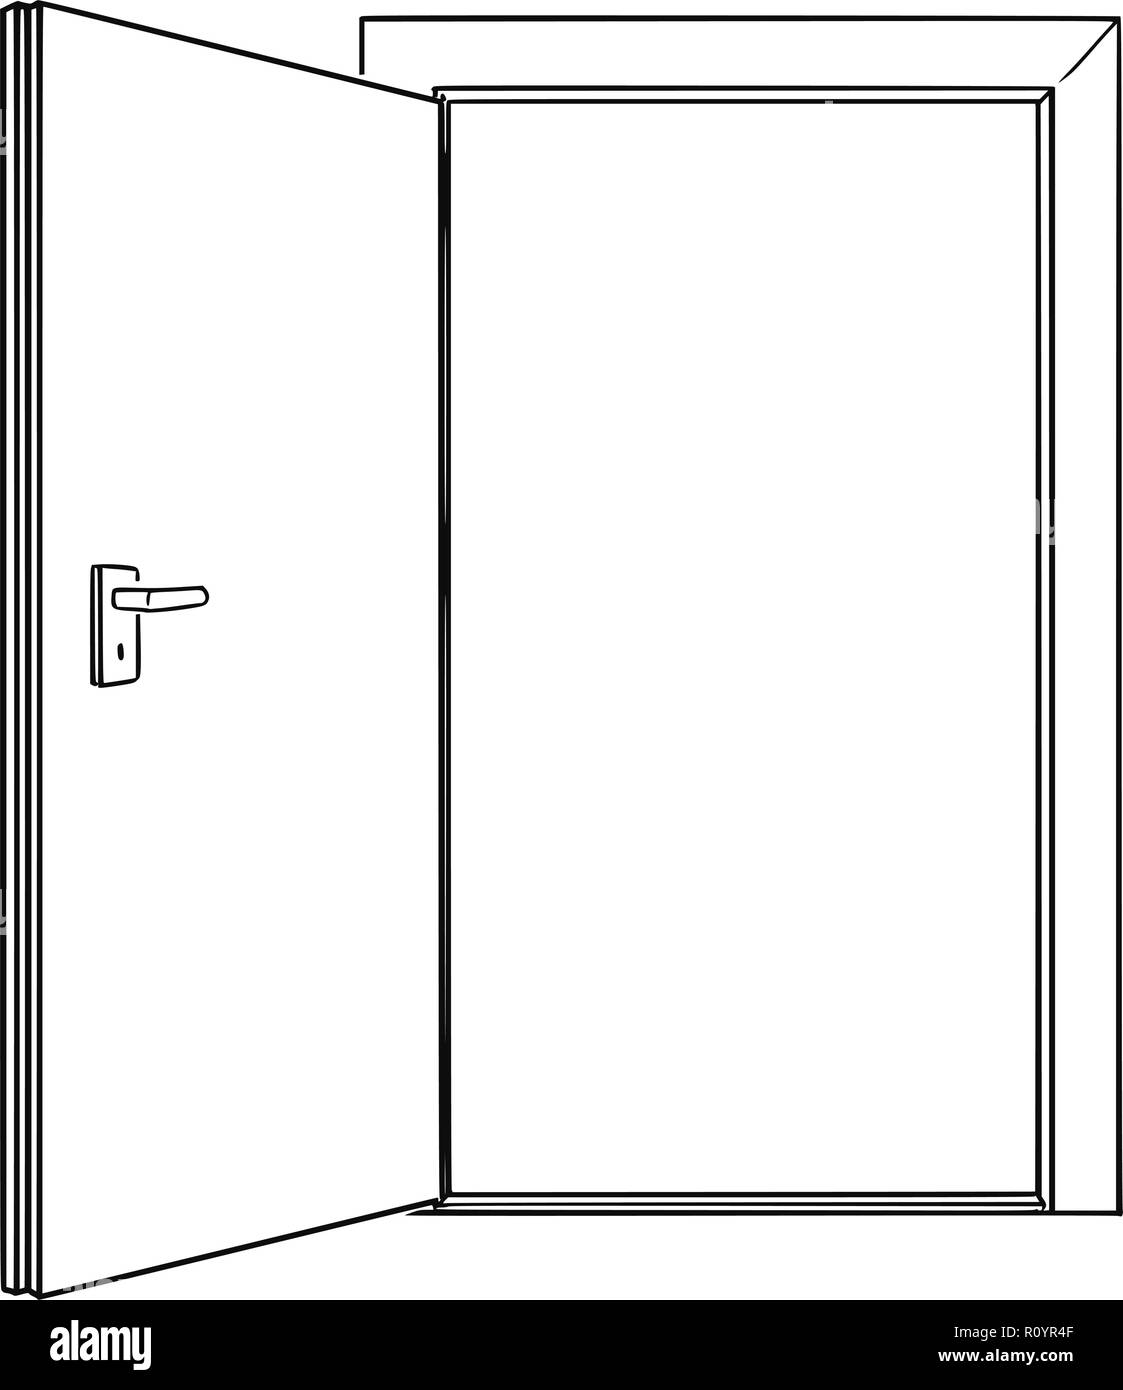 Cartoon Drawing of Inviting Open Door Stock Vector